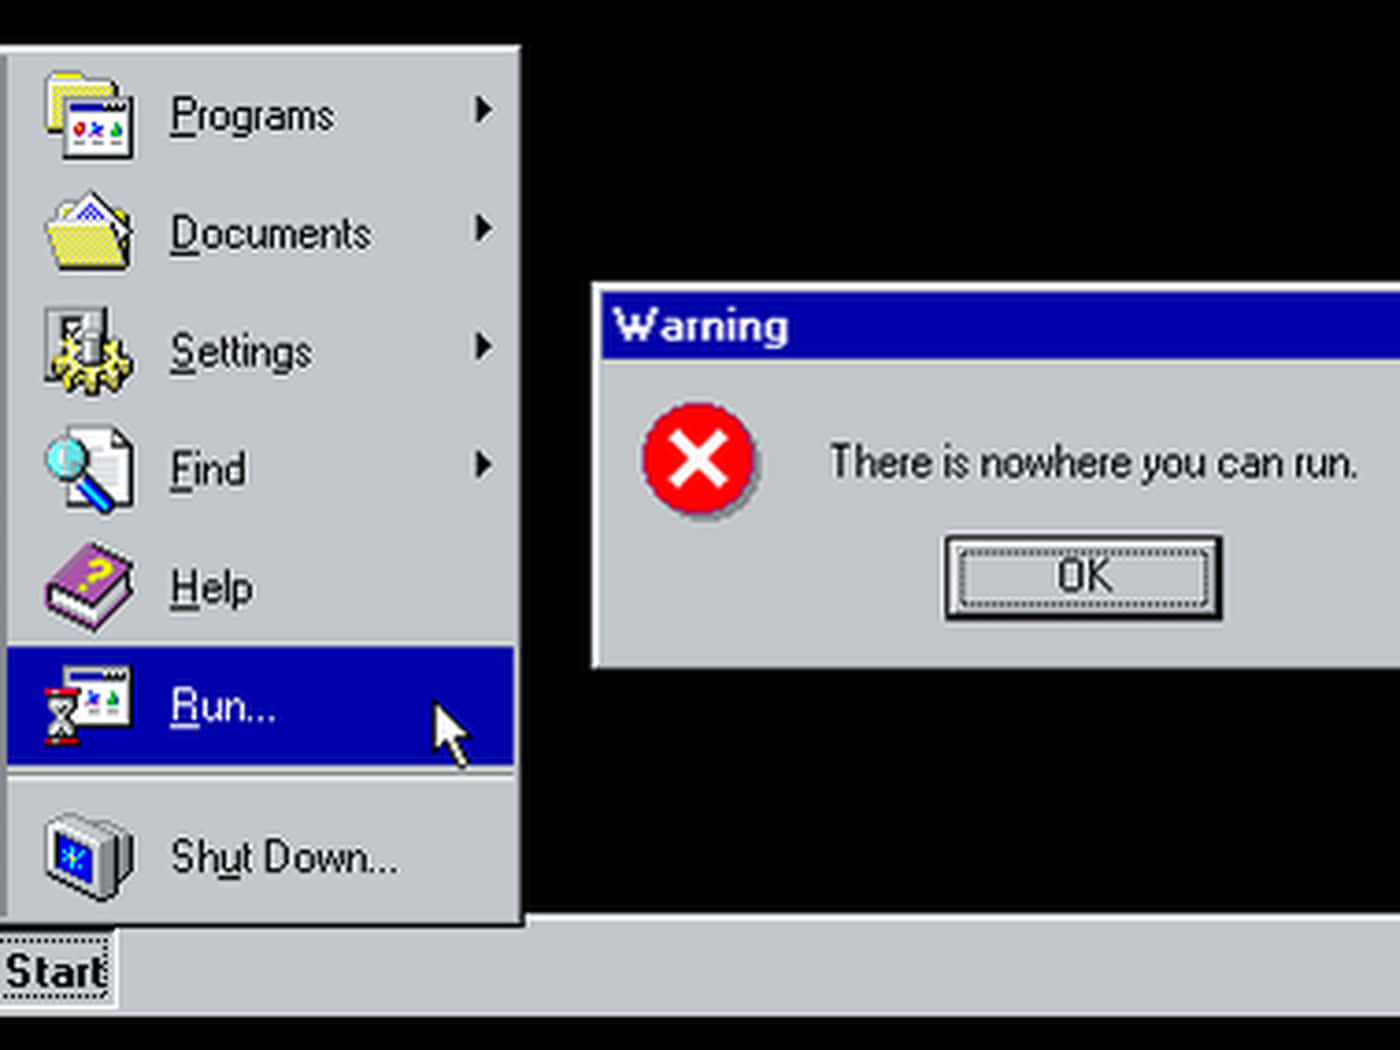 Lainterfaz Gráfica De Usuario De Windows 95 En Un Monitor De Escritorio.